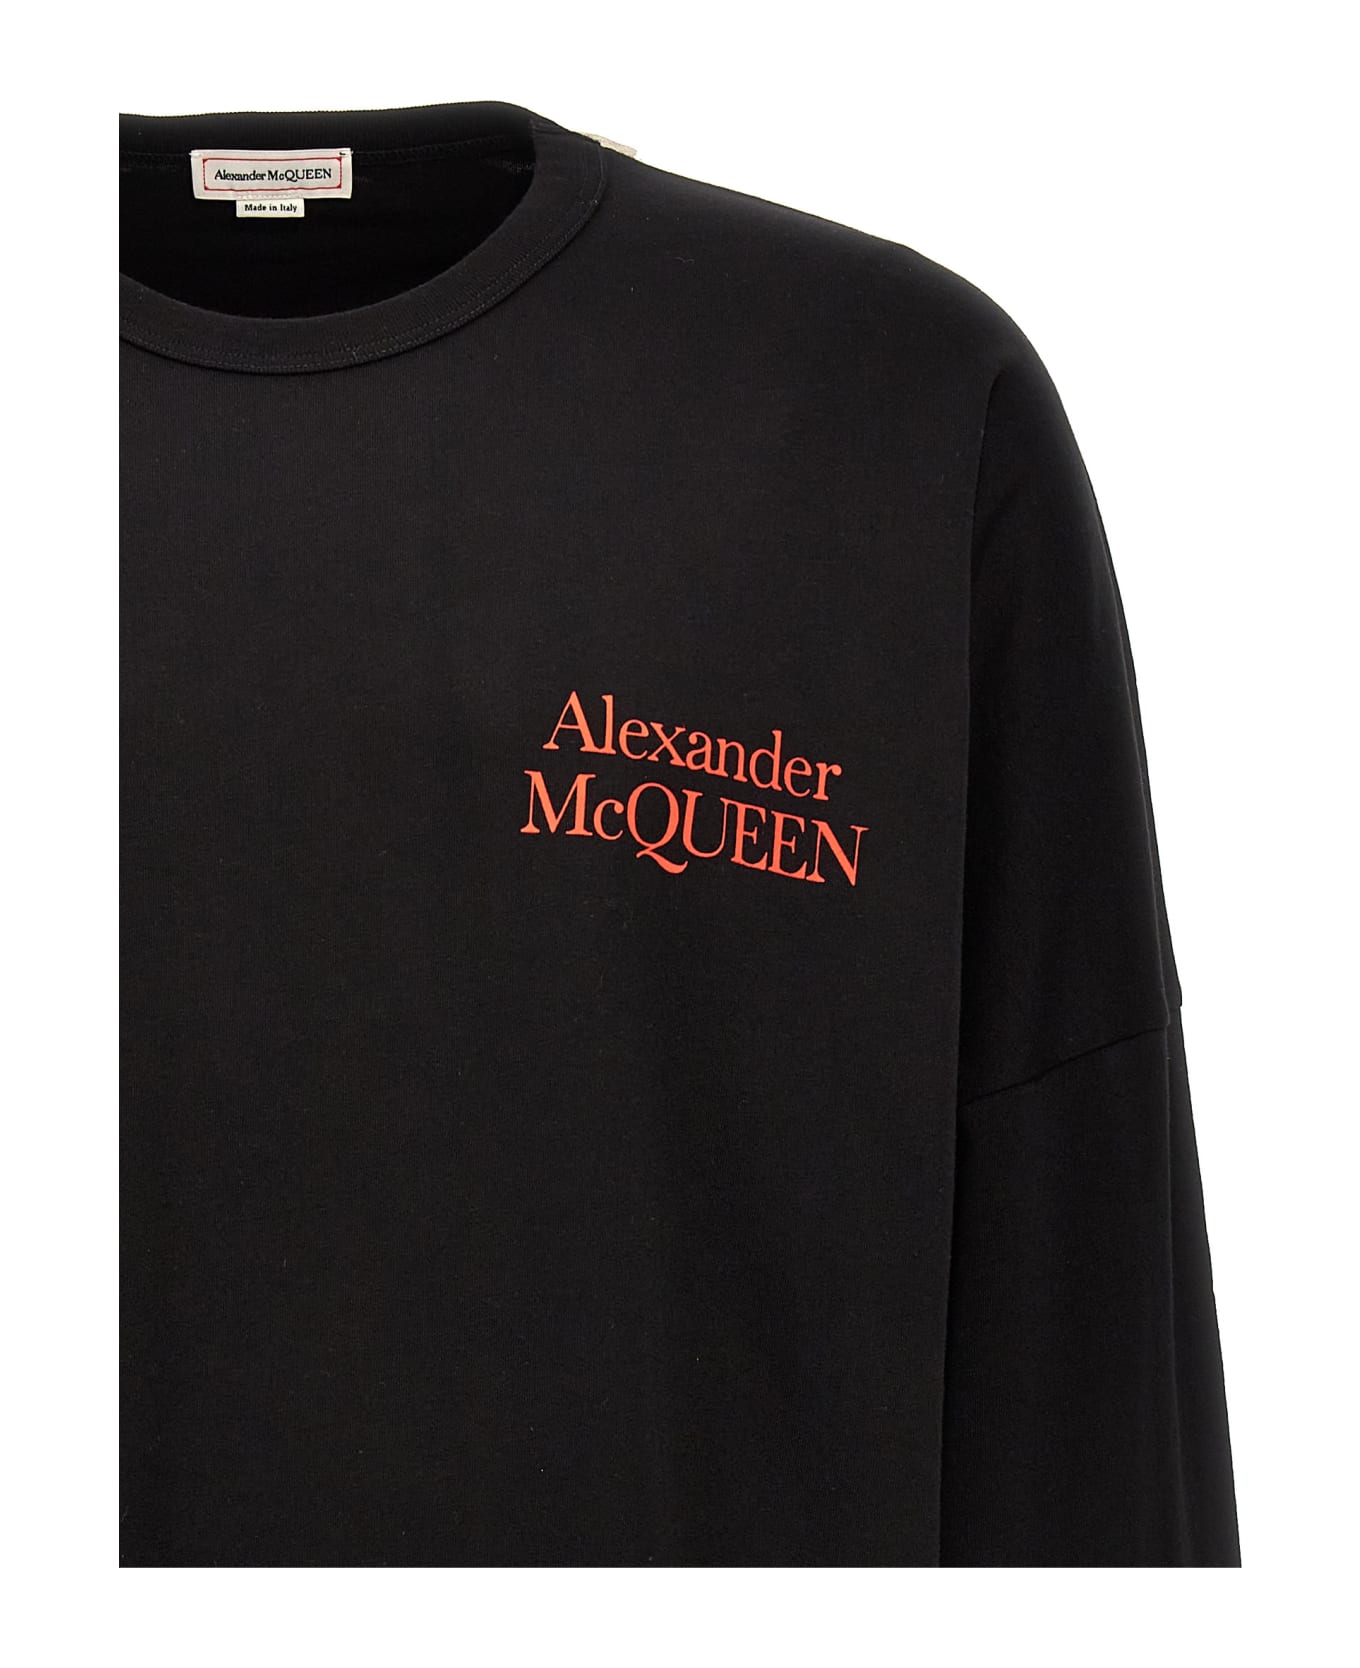 Alexander McQueen Logo Long Sleeves T-shirt - Black フリース